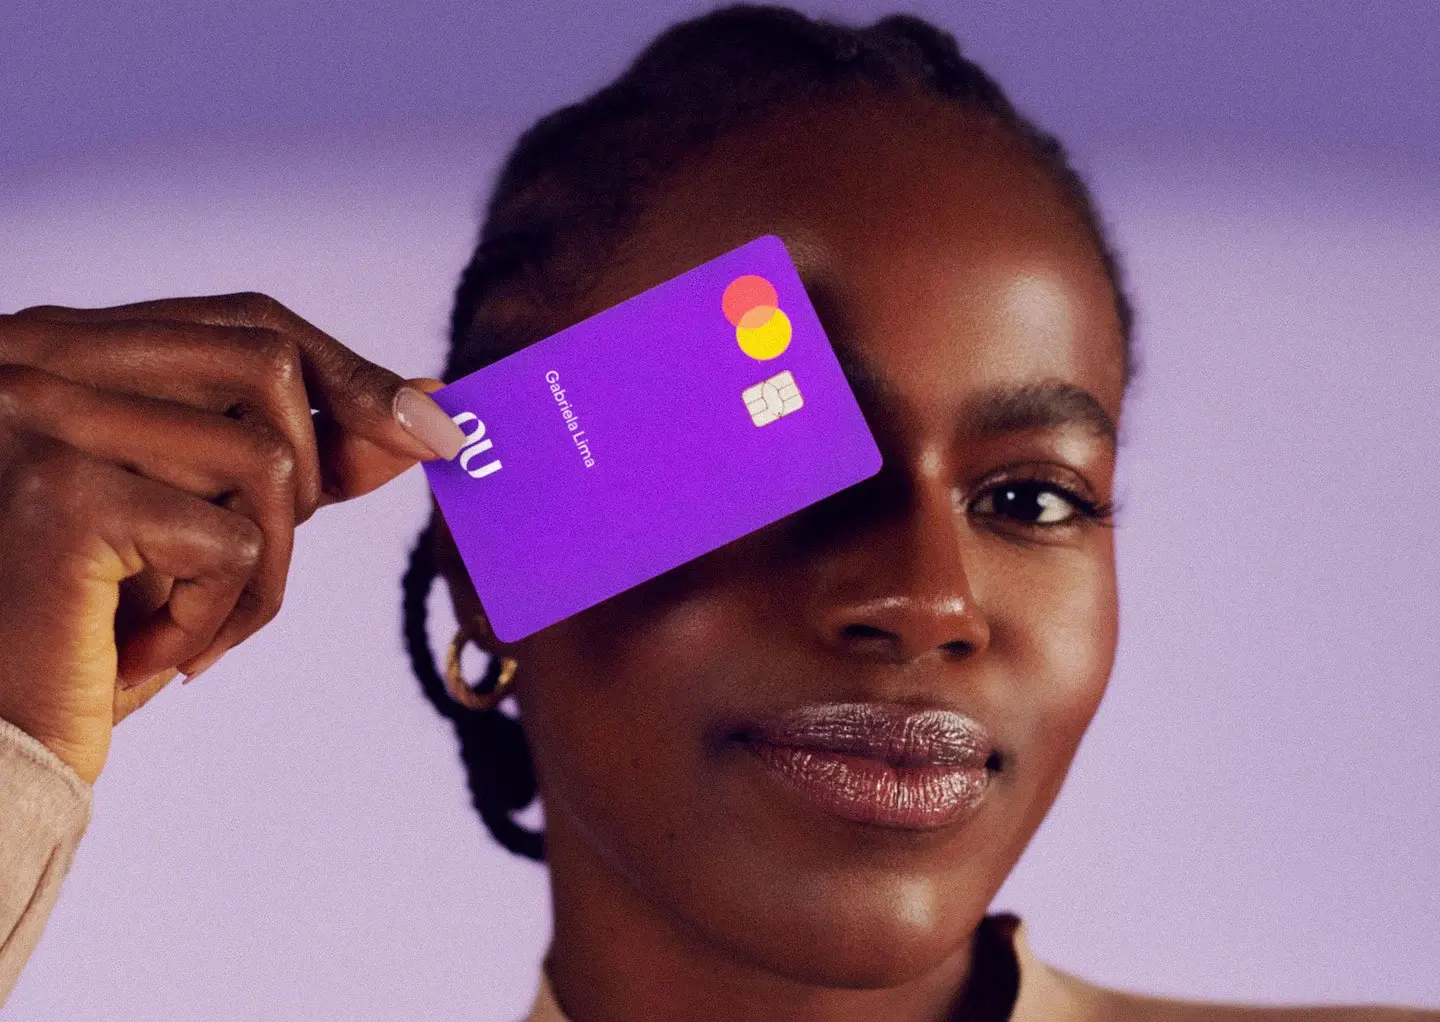 O Nubank, fintech que está sempre tentando facilitar a vida de seus usuários, lançou uma nova linha de crédito que permite empréstimos de até R$ 150 mil em 48 parcelas, ou seja, 4 anos.